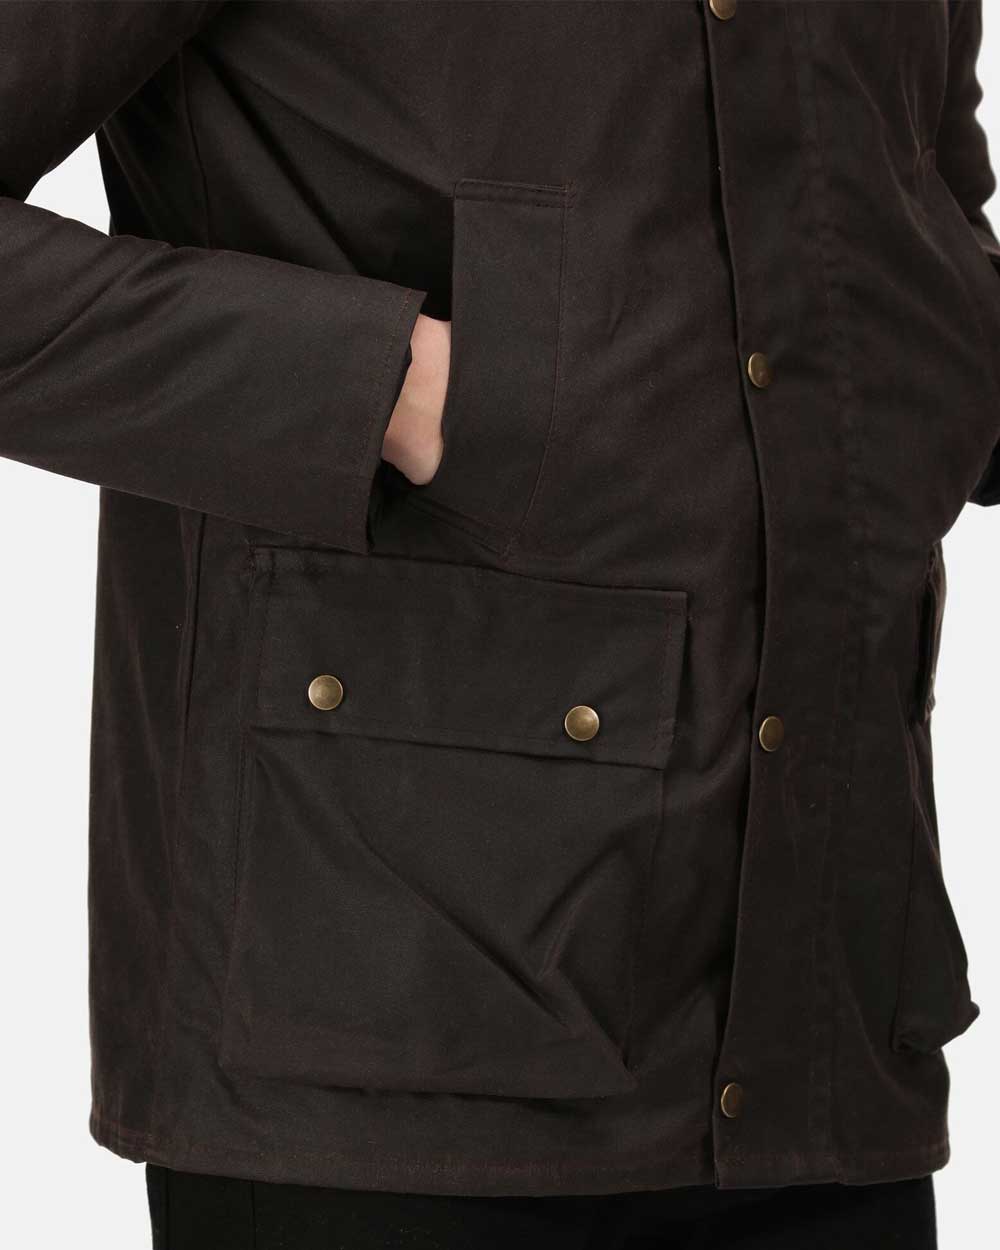 Regatta Banbury Wax Jacket in Brown 